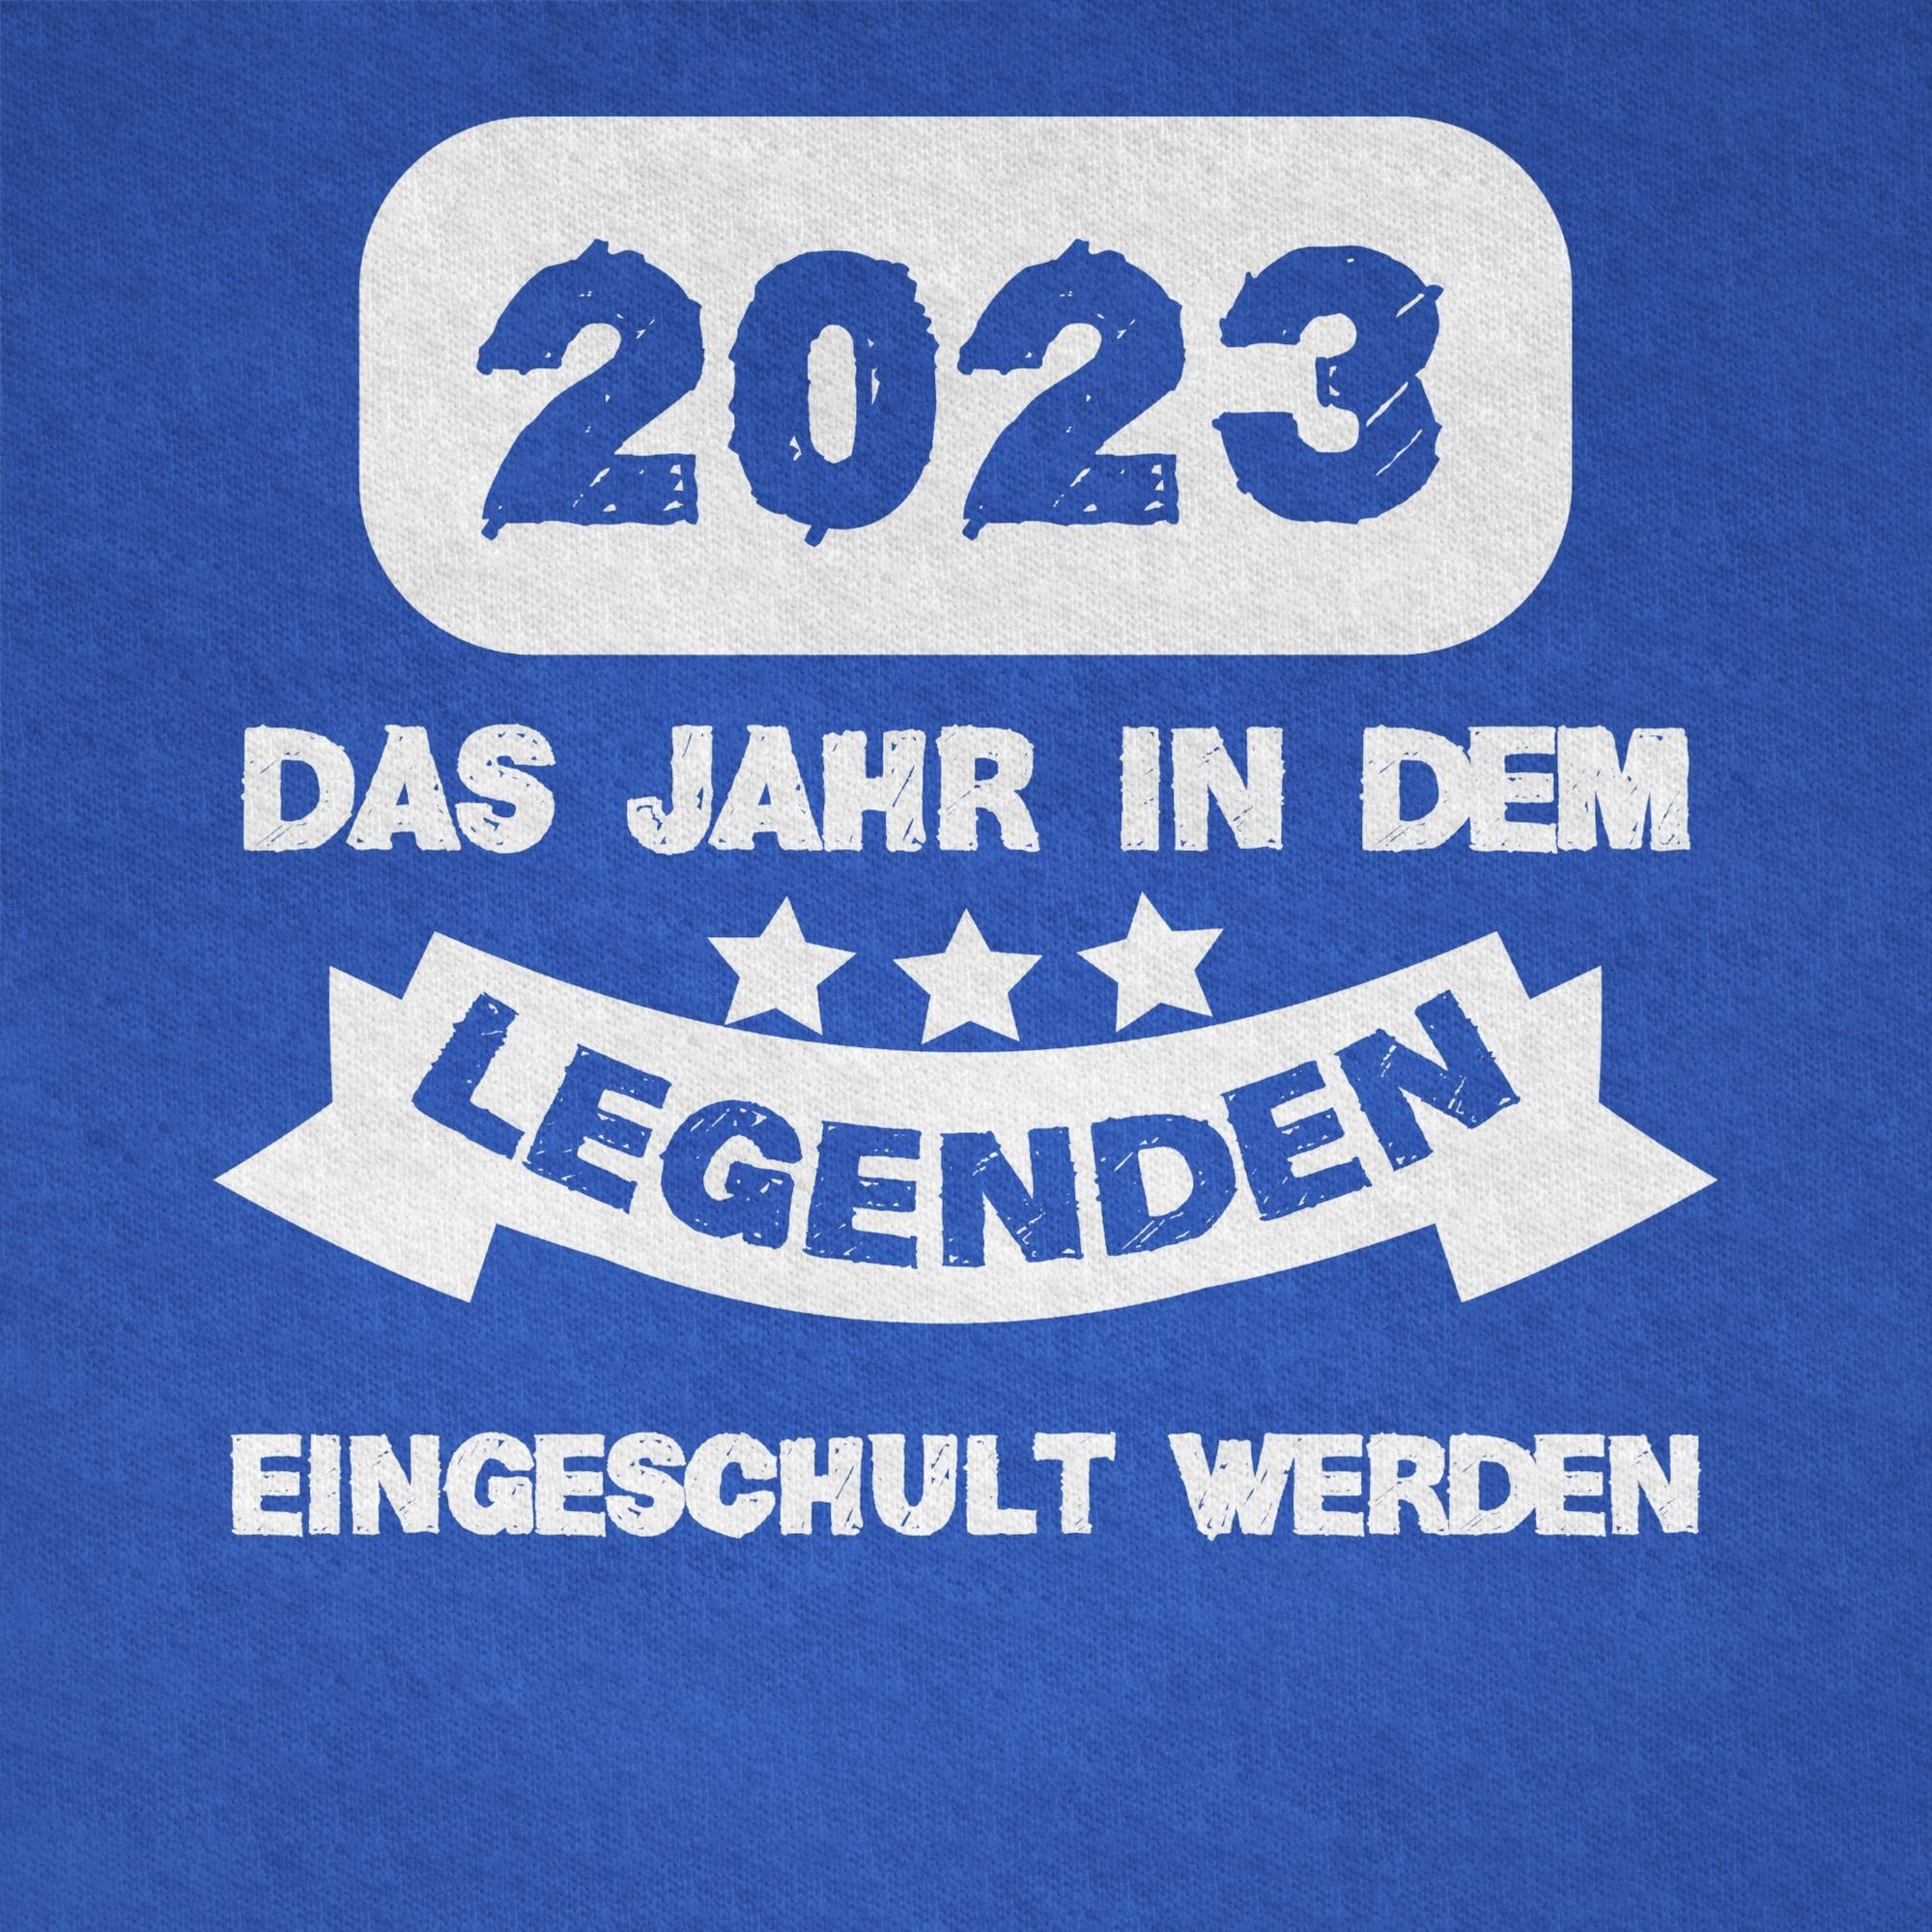 dem Junge Jahr 02 in Schulanfang eingeschult weiß Royalblau Geschenke Shirtracer Das T-Shirt werden Legenden 2023 Einschulung